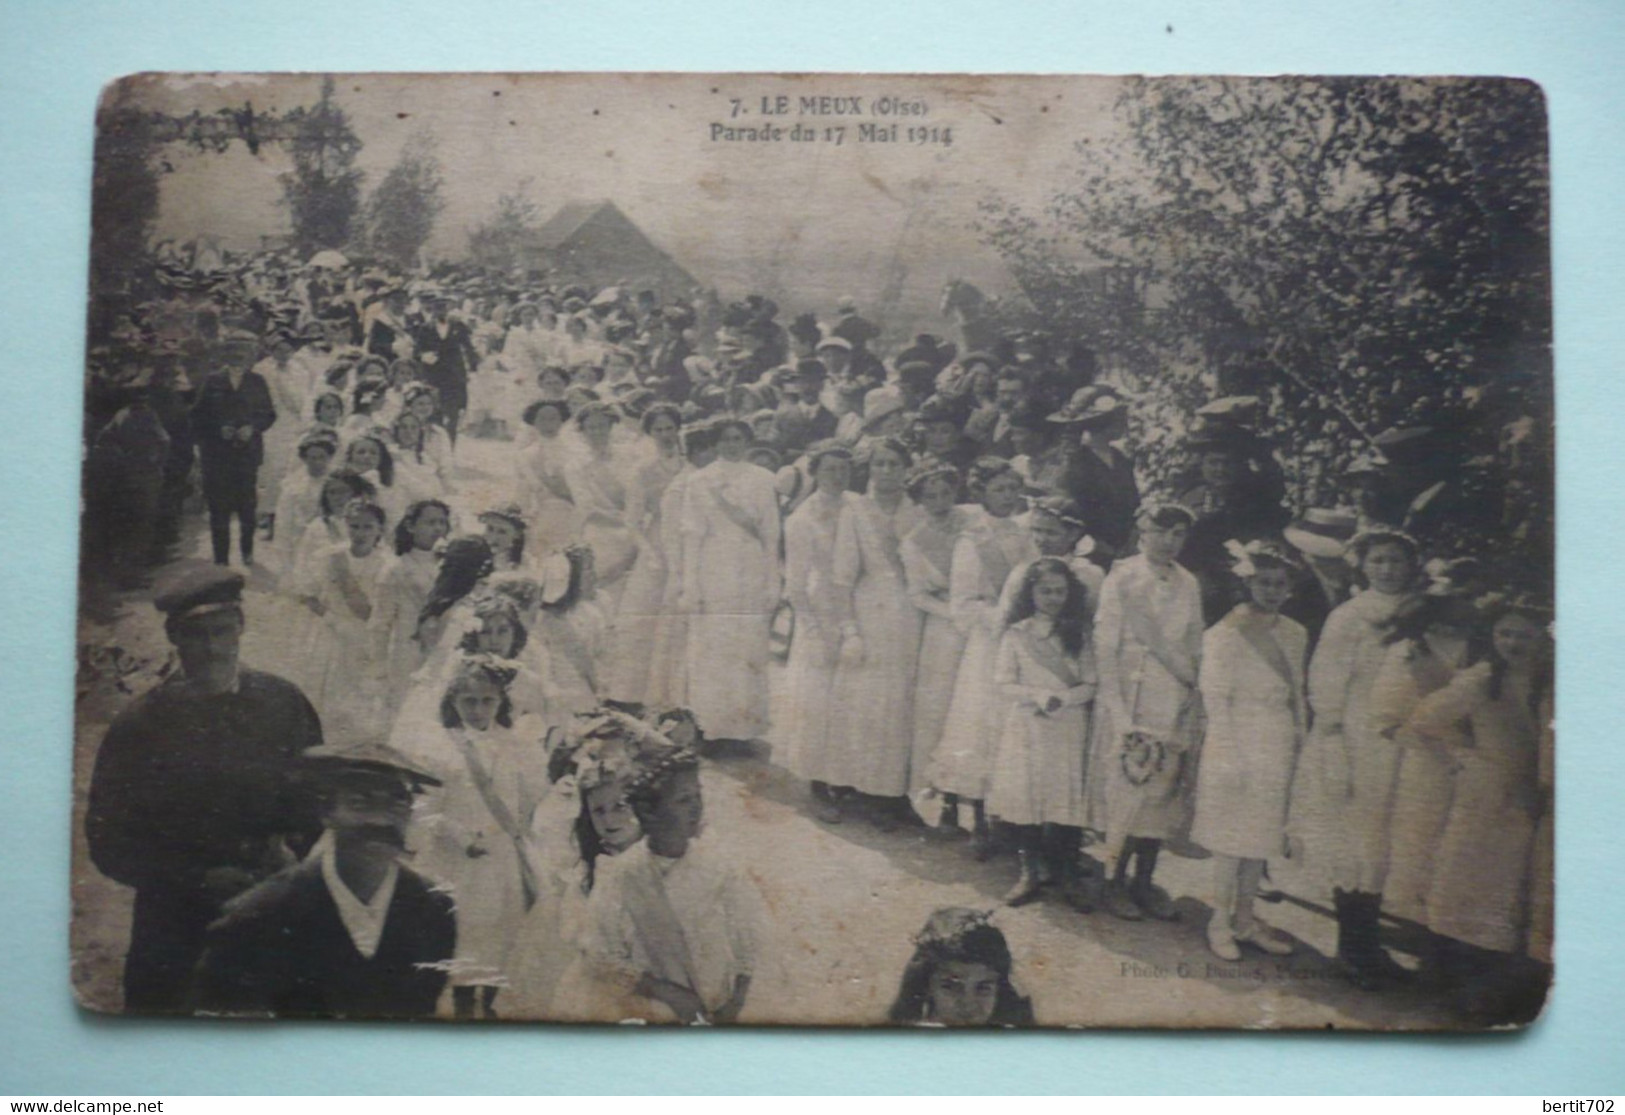 60 - LE MEUX - PARADE DU 17 MAI 1914 - Bouquet Provincial - Tir à L'arc  - Groupe De Jeunes Filles Tout De Blanc Vêtues - Tir à L'Arc